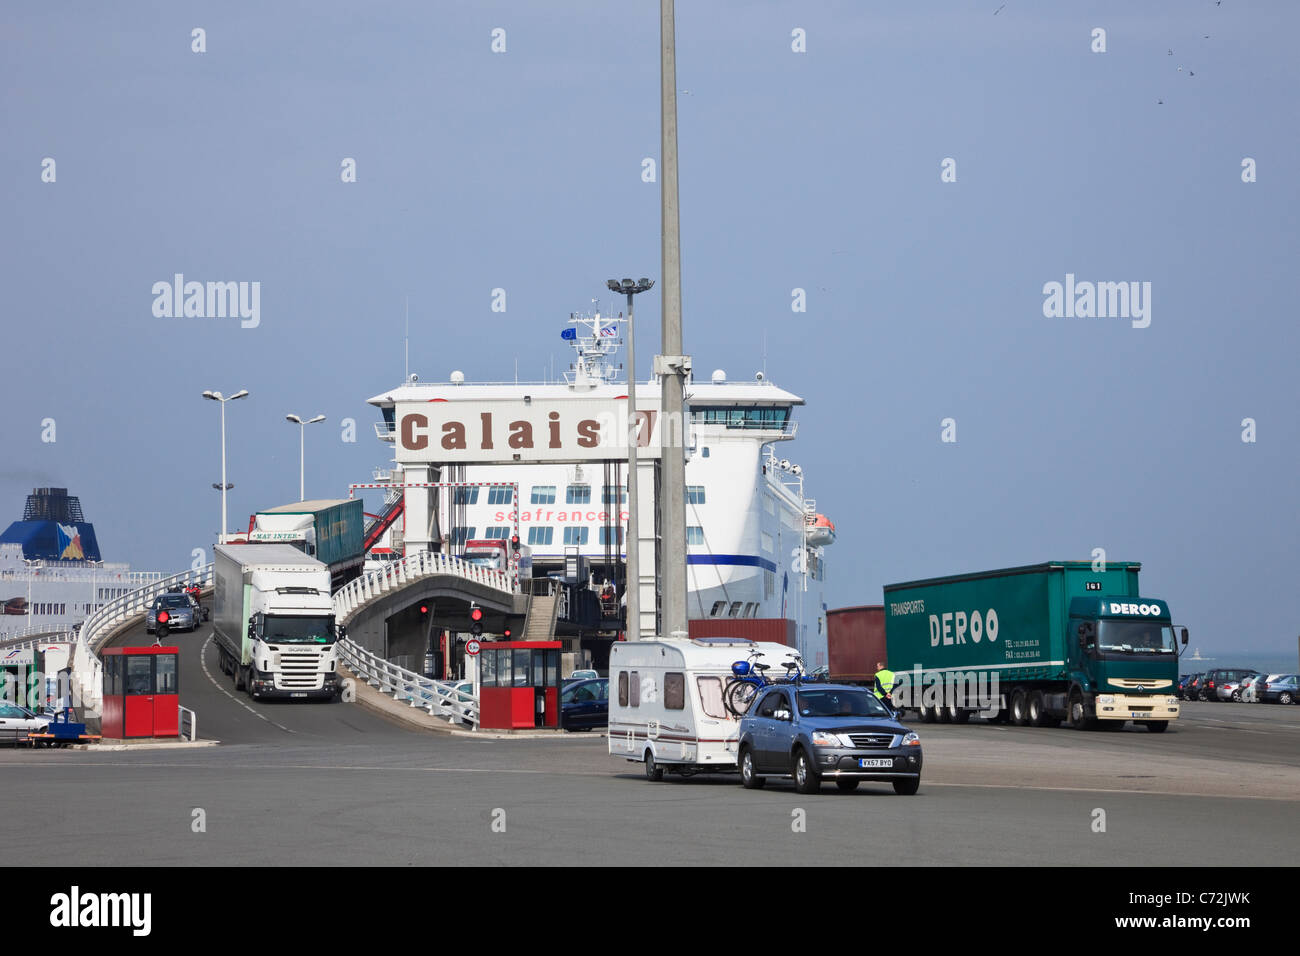 Le automobili e gli autocarri sbarcano dal servizio di traghetto SeaFrance Cross Channel da dover al terminal portuale di Calais, Francia, Europa. Foto Stock